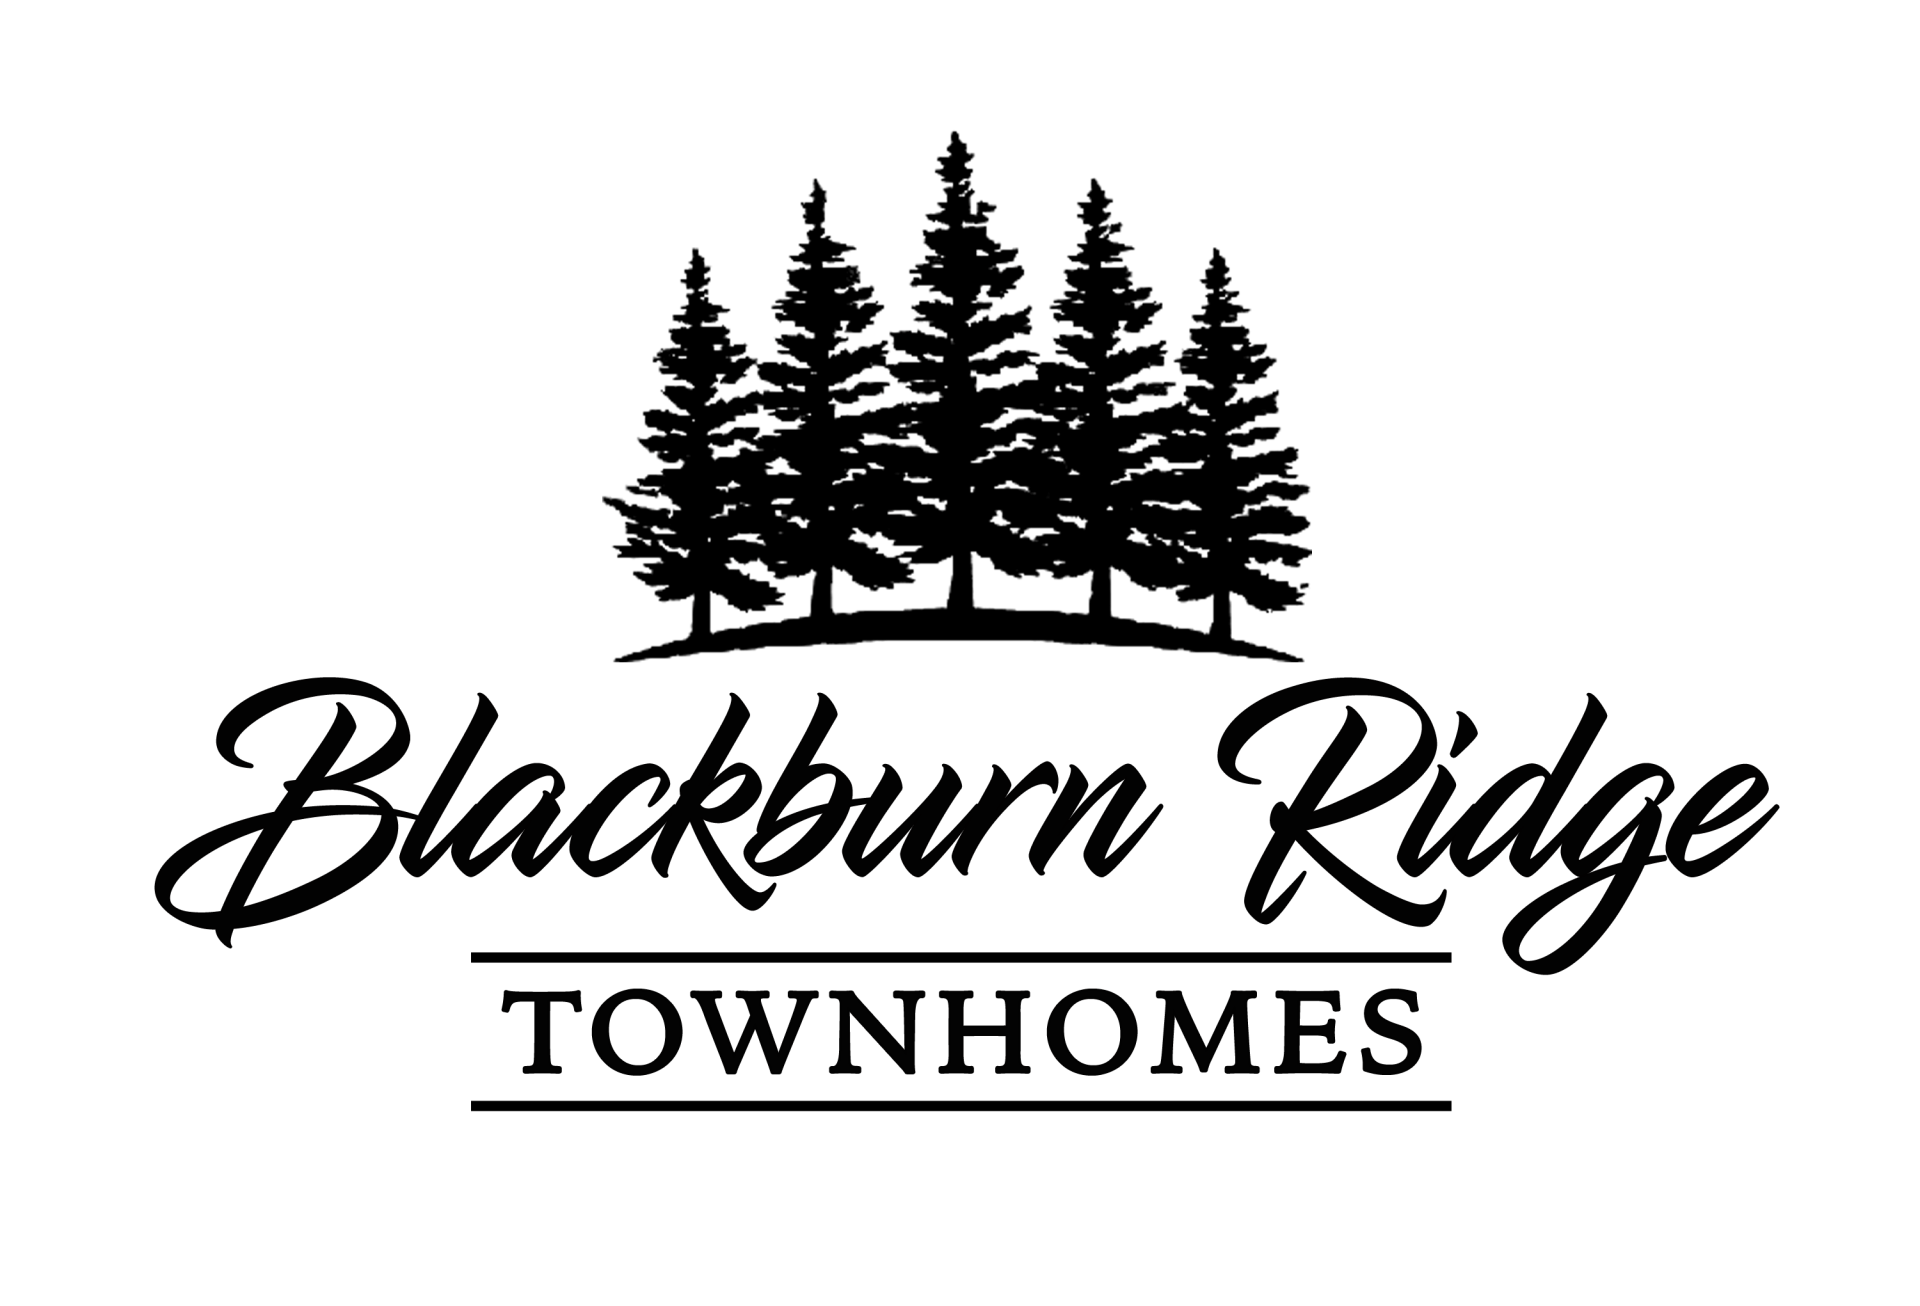 Blackburn Ridge Townhomes